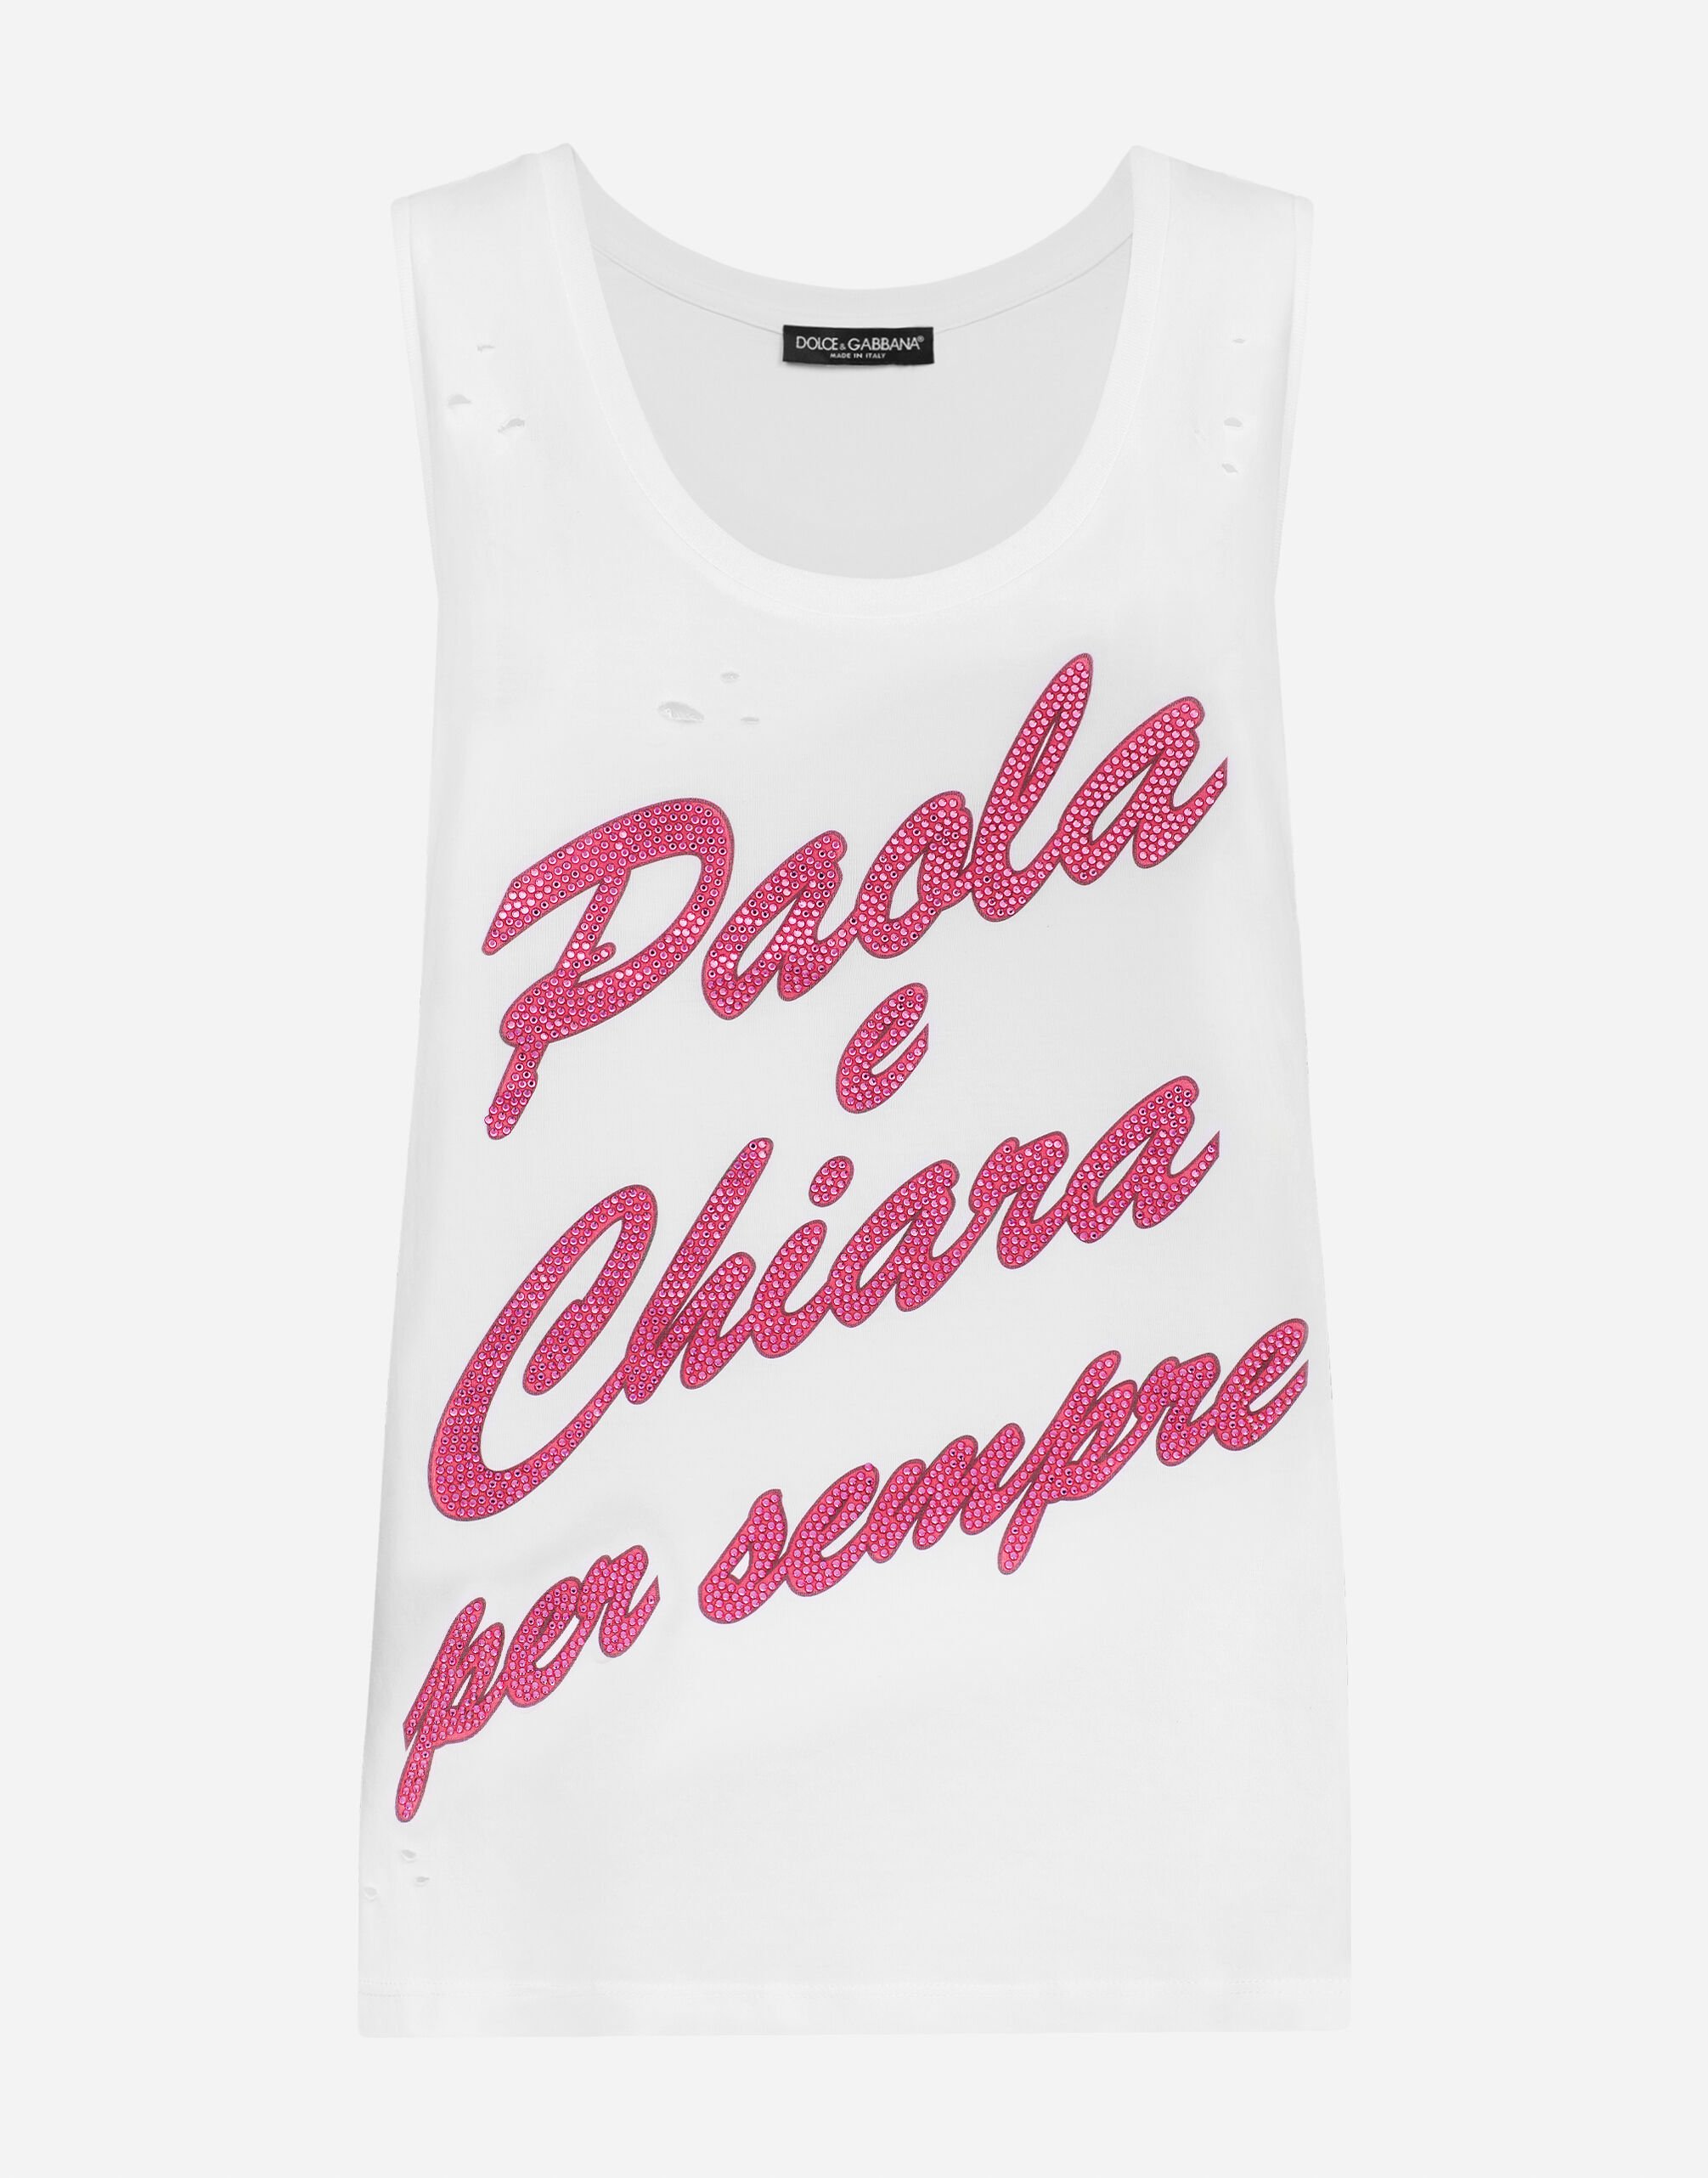 Dolce&Gabbana Tanktop "Paola e Chiara per sempre" Weiss I8AOHMG7K9Z